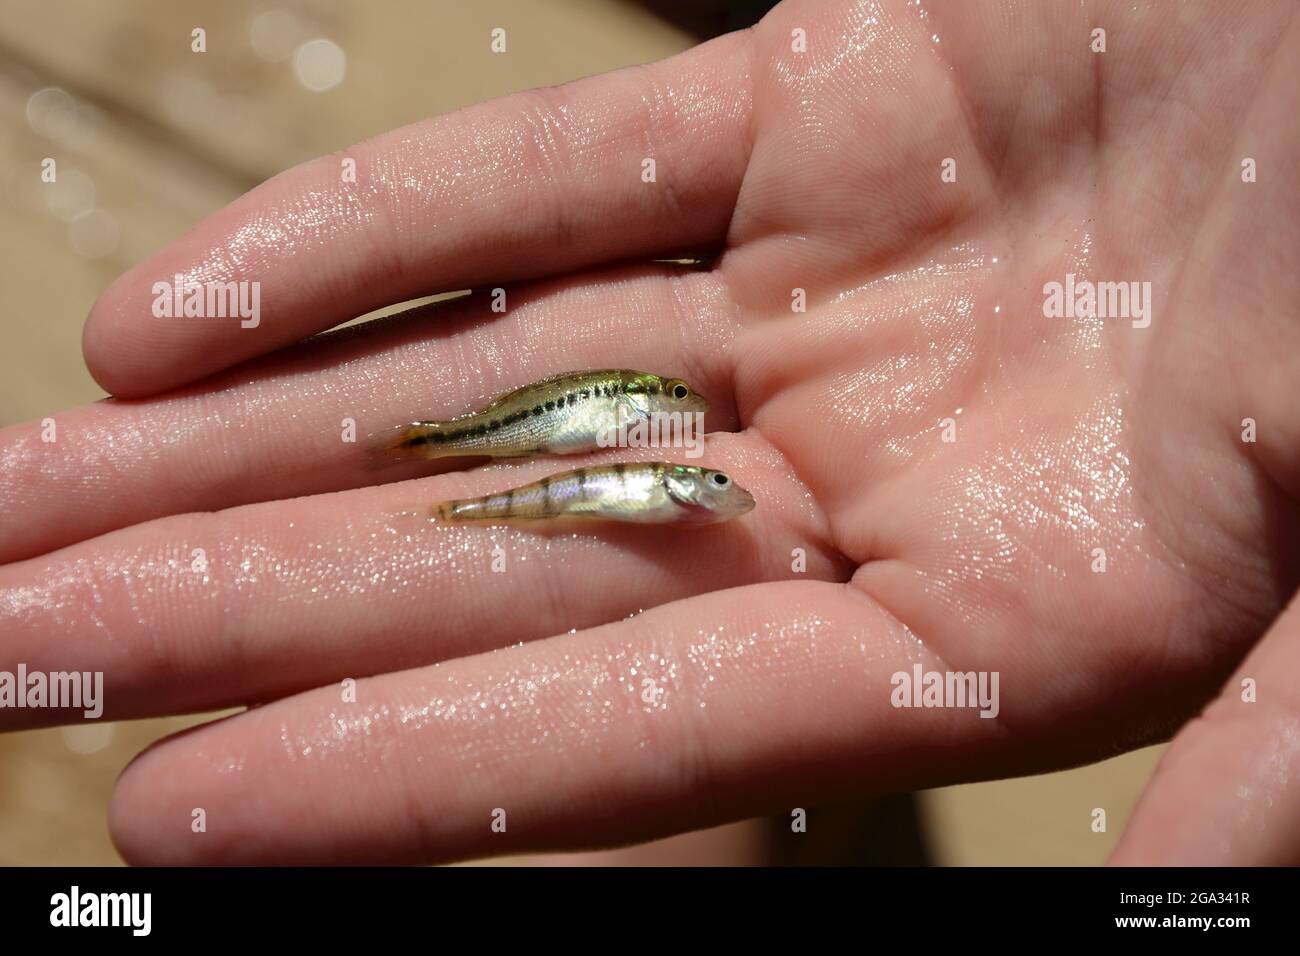 Largemouth basso (Micropterus salmoides) e giallo persch (Perca flavescens) bambini in una mano bagnata; New York, Stati Uniti d'America Foto Stock